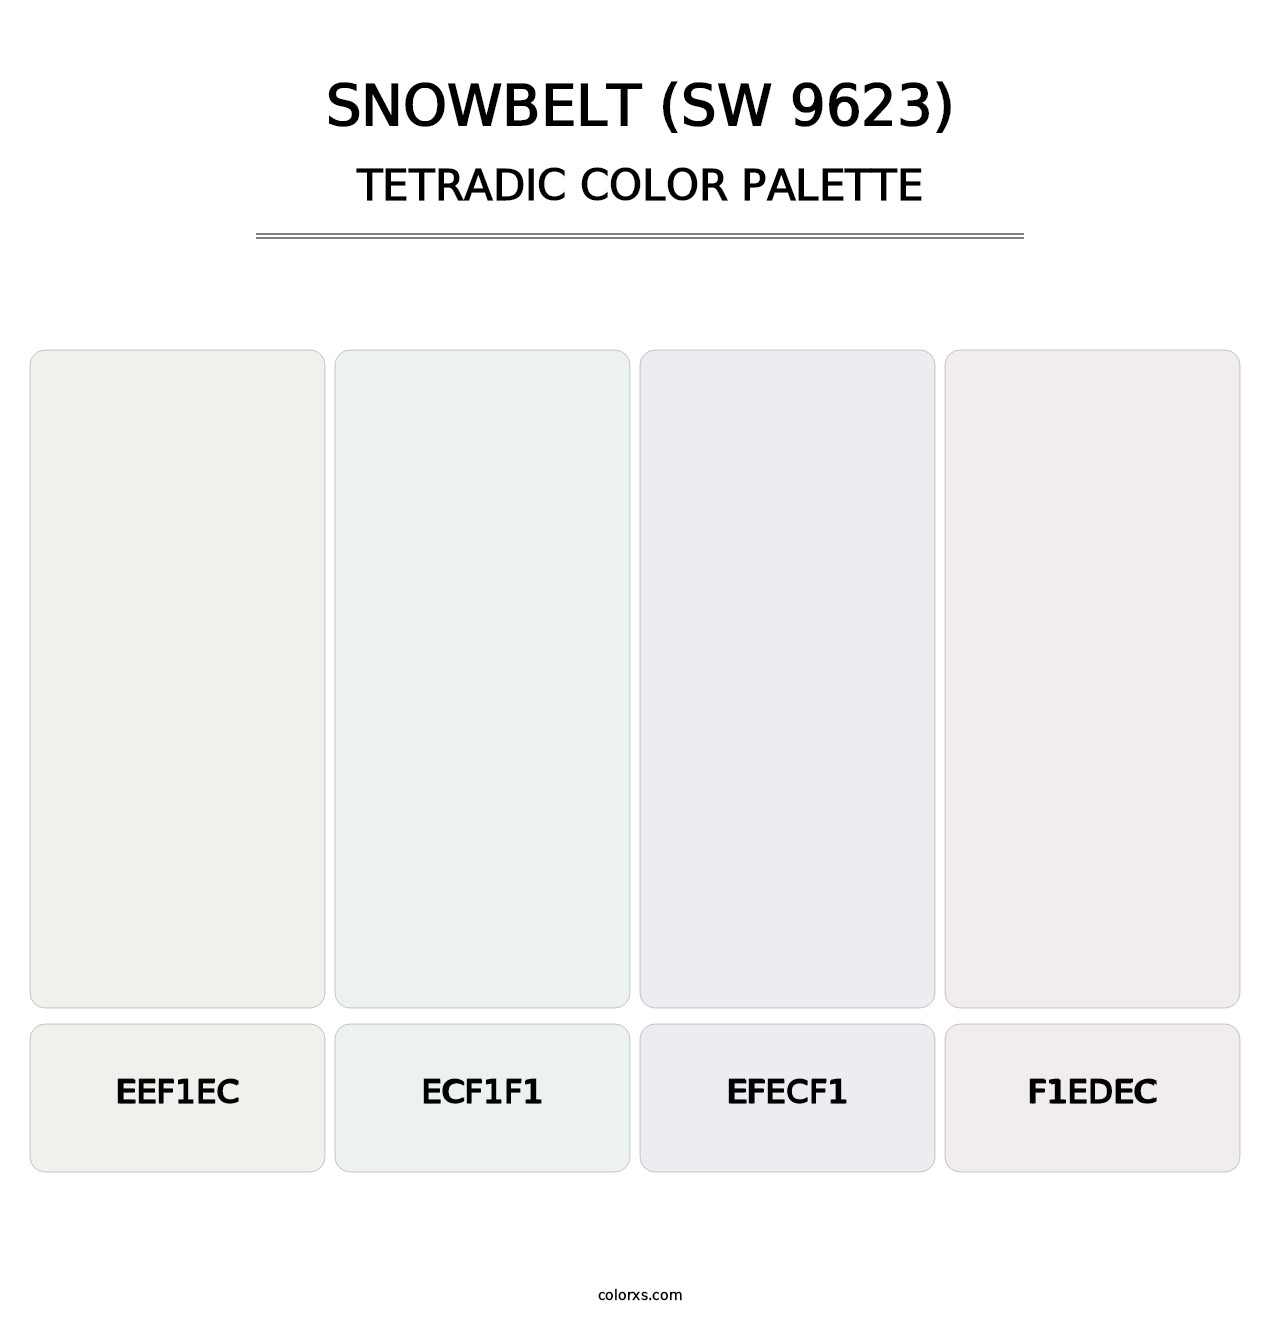 Snowbelt (SW 9623) - Tetradic Color Palette